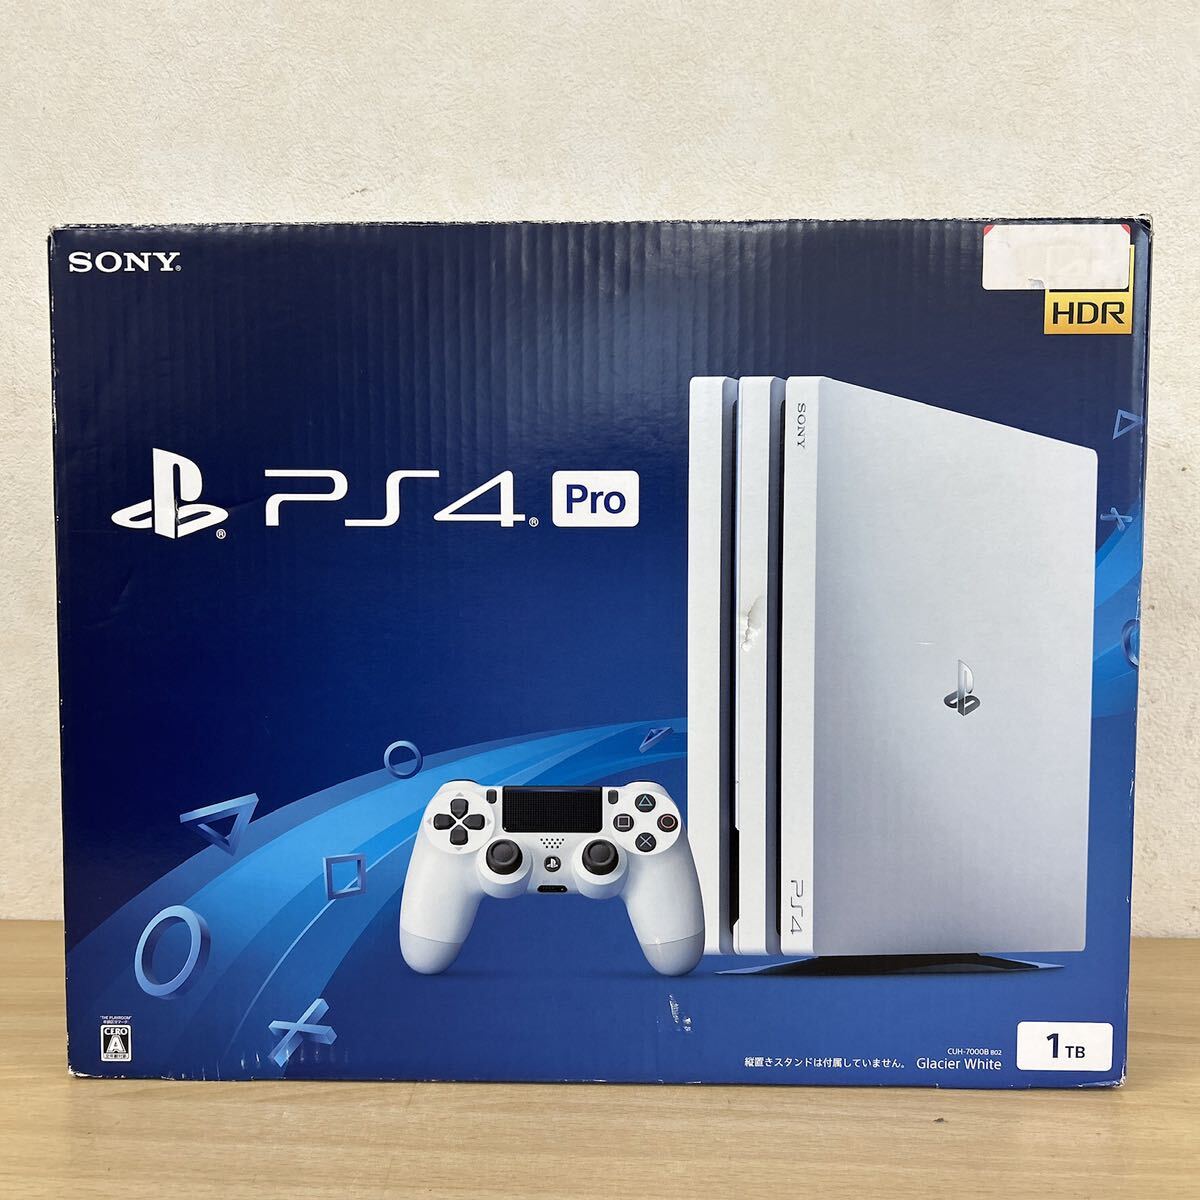 中古品SONY PlayStation PS4 Pro 1TB グレイシャーホワイト ソニー プレステーション4 CUH-7200BB02 ゲーム機・玩具